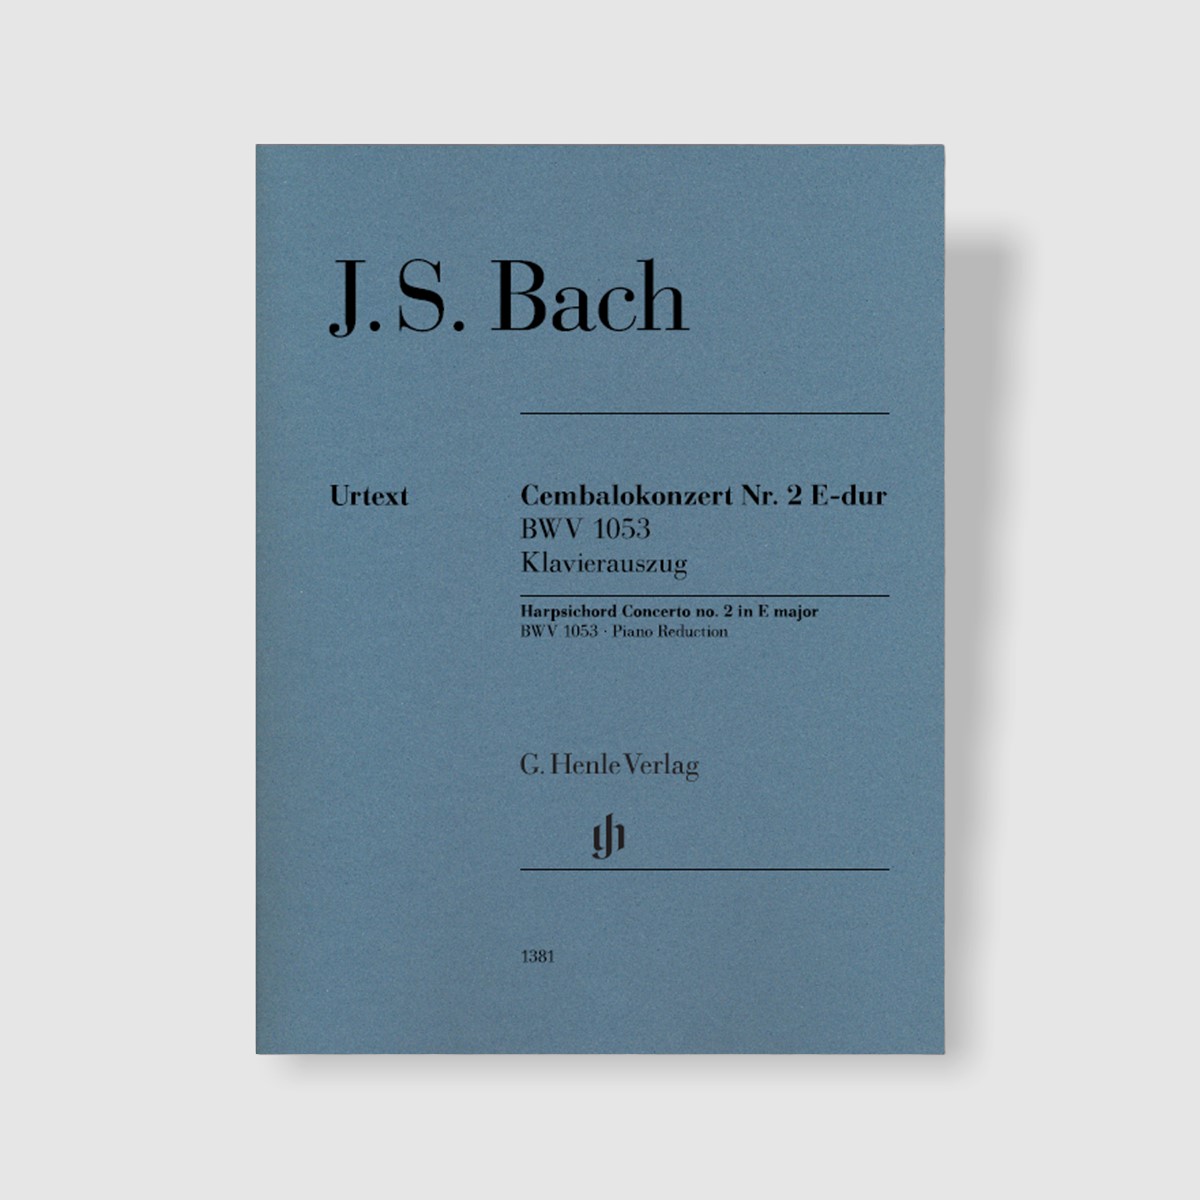 바흐 하프시코드 협주곡 No. 2 in E Major, BWV 1053 (4Hands)